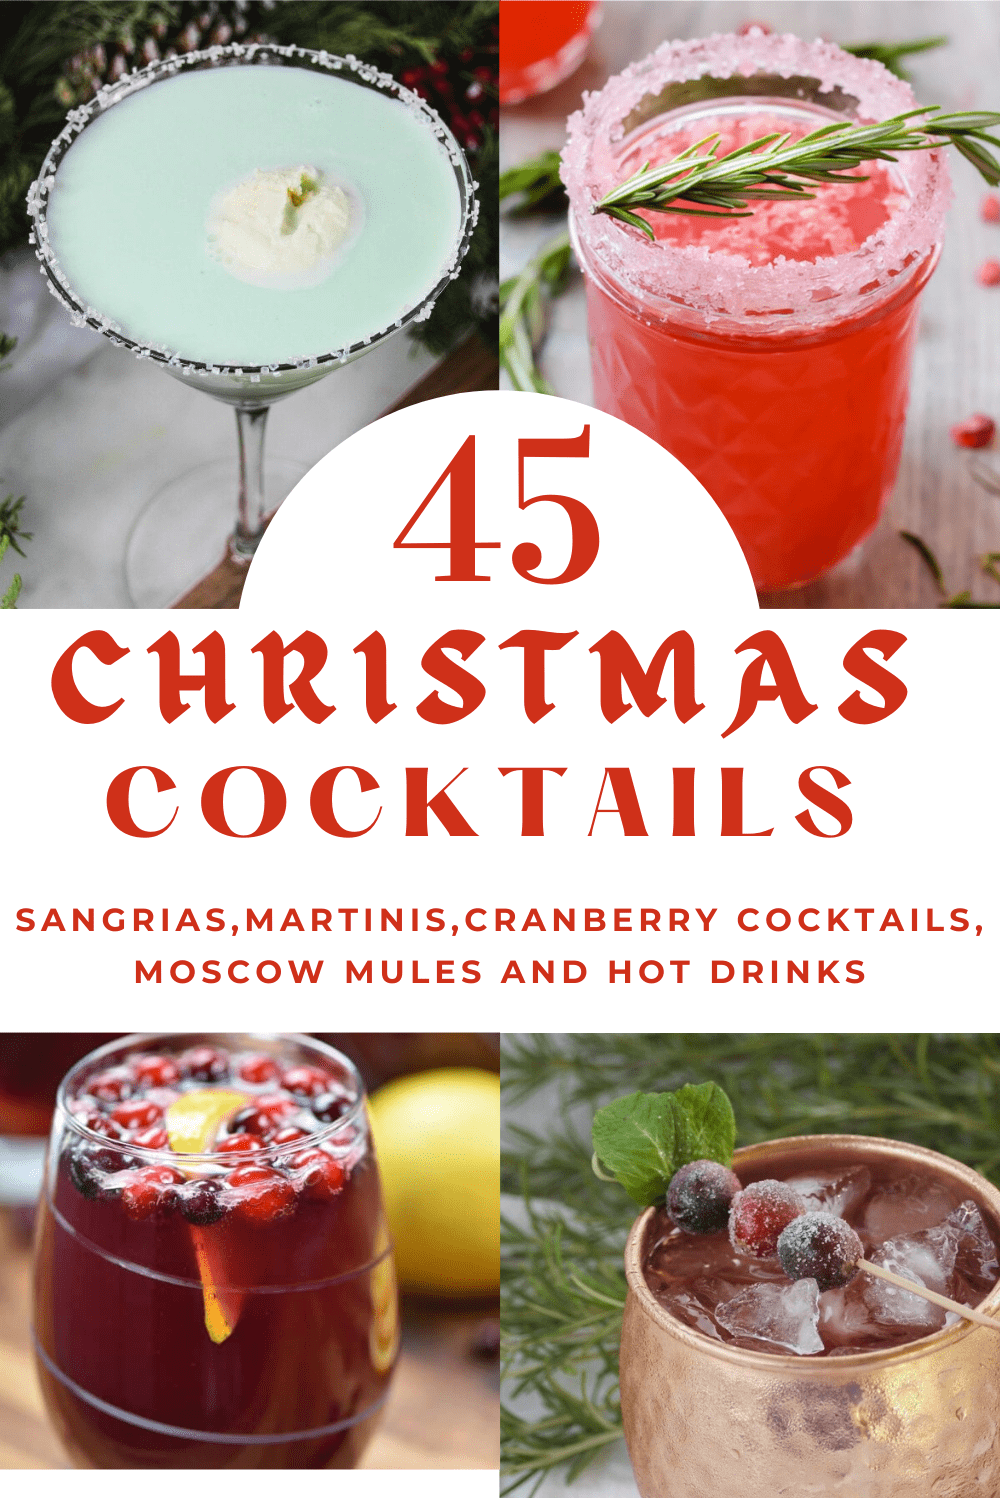 Christmas Cocktails, Christmas Martini, Christmas Moscow Mule, Christmas Sangria, Christmas Cocktail Recipes, Christmas Cranberry Cocktails, Christmas Hot Drinks